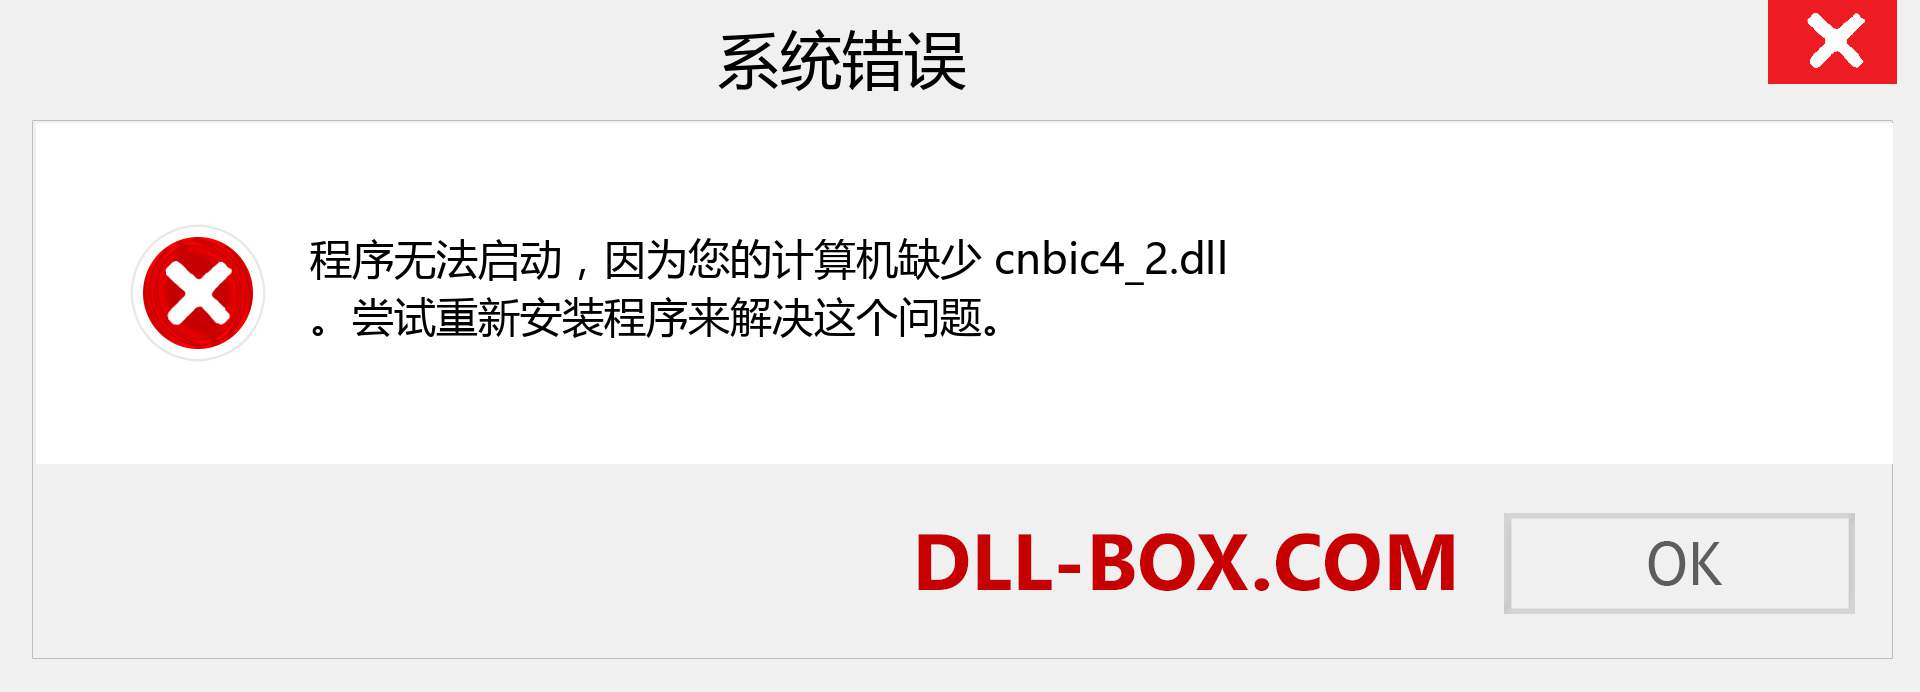 cnbic4_2.dll 文件丢失？。 适用于 Windows 7、8、10 的下载 - 修复 Windows、照片、图像上的 cnbic4_2 dll 丢失错误